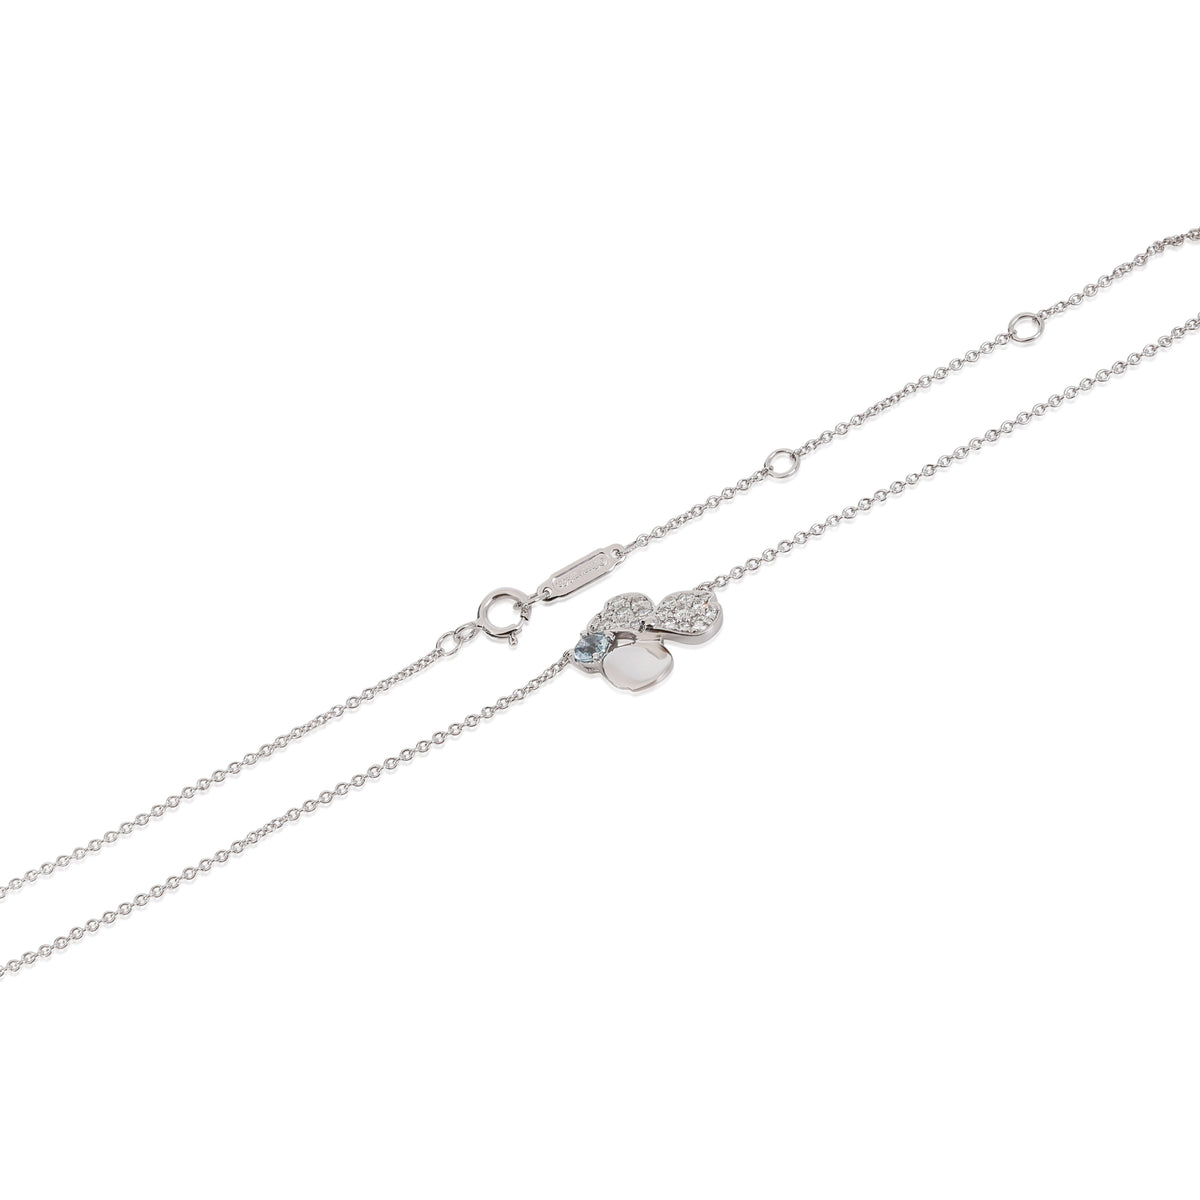 Tiffany & Co. Paper Flowers Aquamarine Diamond Necklace in Platinum 0.13ctw